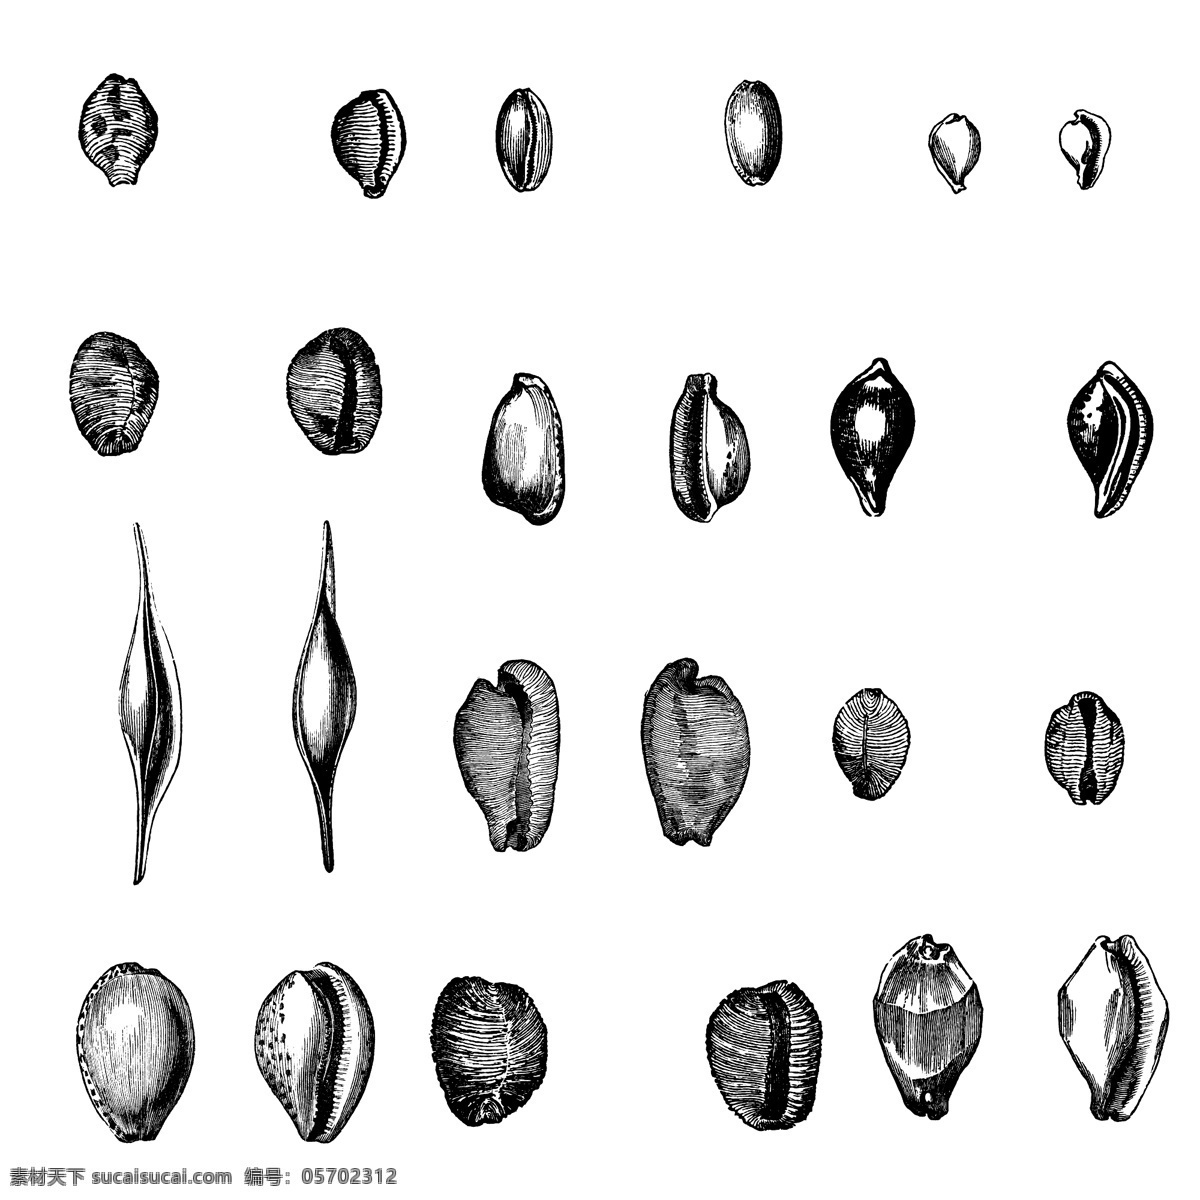 鱼类 贝 甲壳 类 欧美 古典 线条 矢量 动物 库 欧洲古典素材 矢量素材 素描素材 线条素材 非 主流 矢量图 其他矢量图